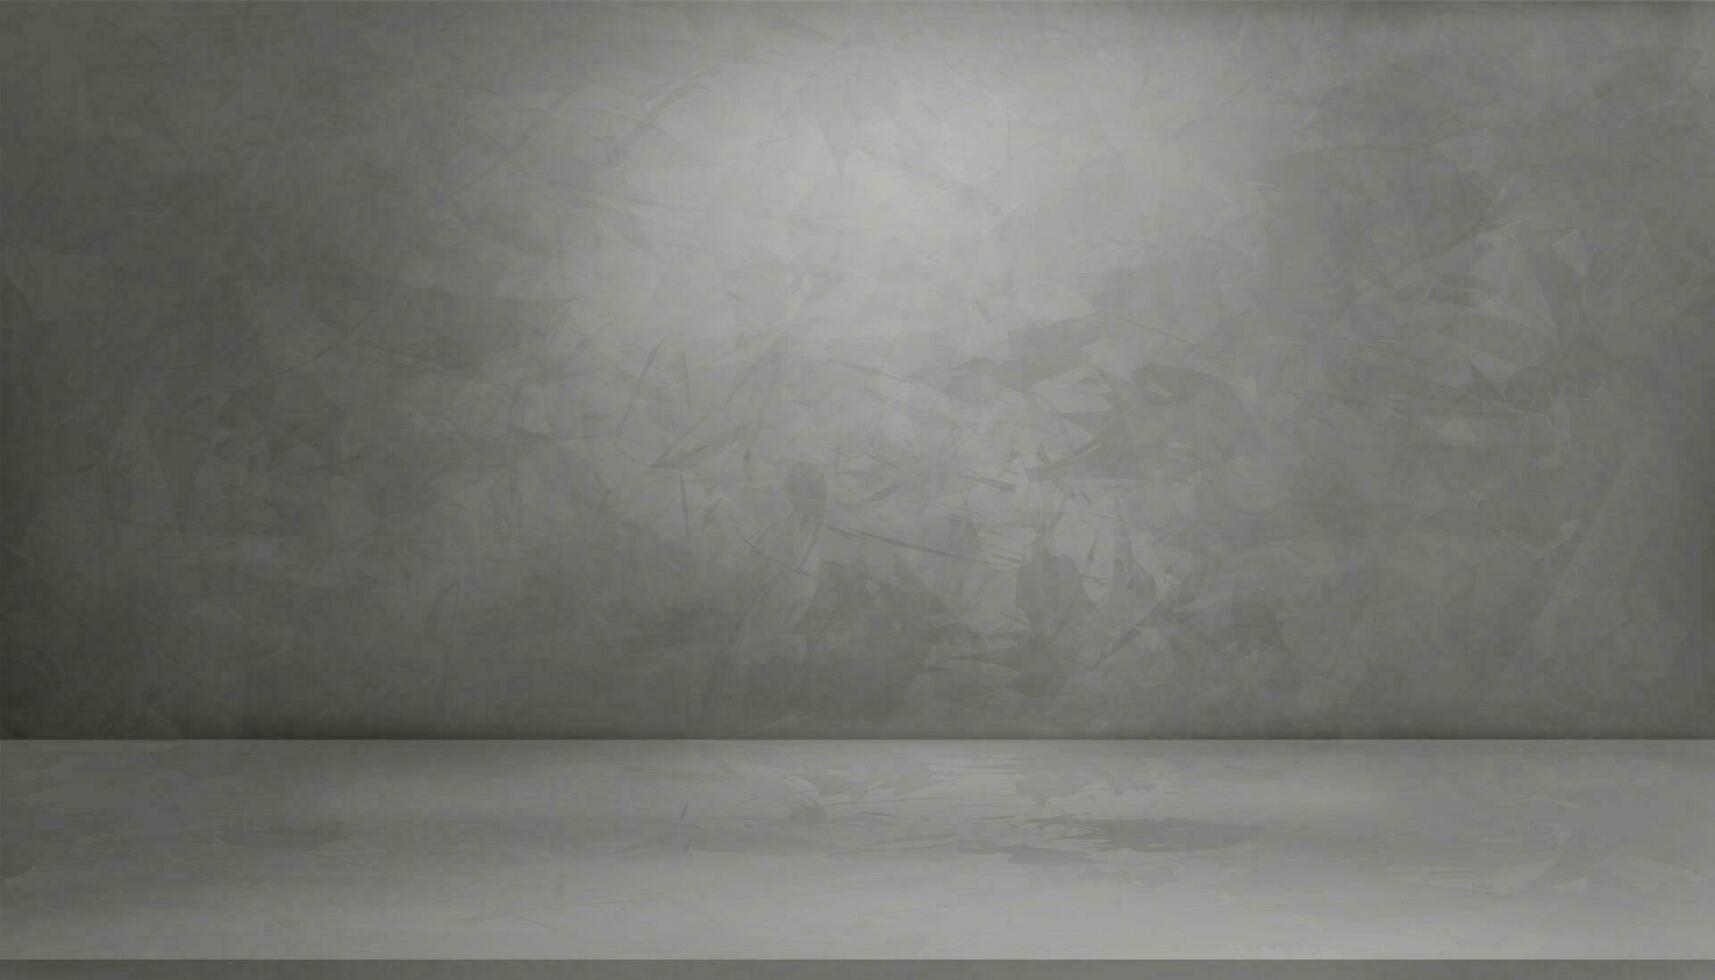 cinzento cimento parede textura fundo com luz e sombra,3d esvaziar estúdio interior plano de fundo, vetor pano de fundo cinzento cimento textura parede com luz em concreto chão, exibição para produtos apresentação